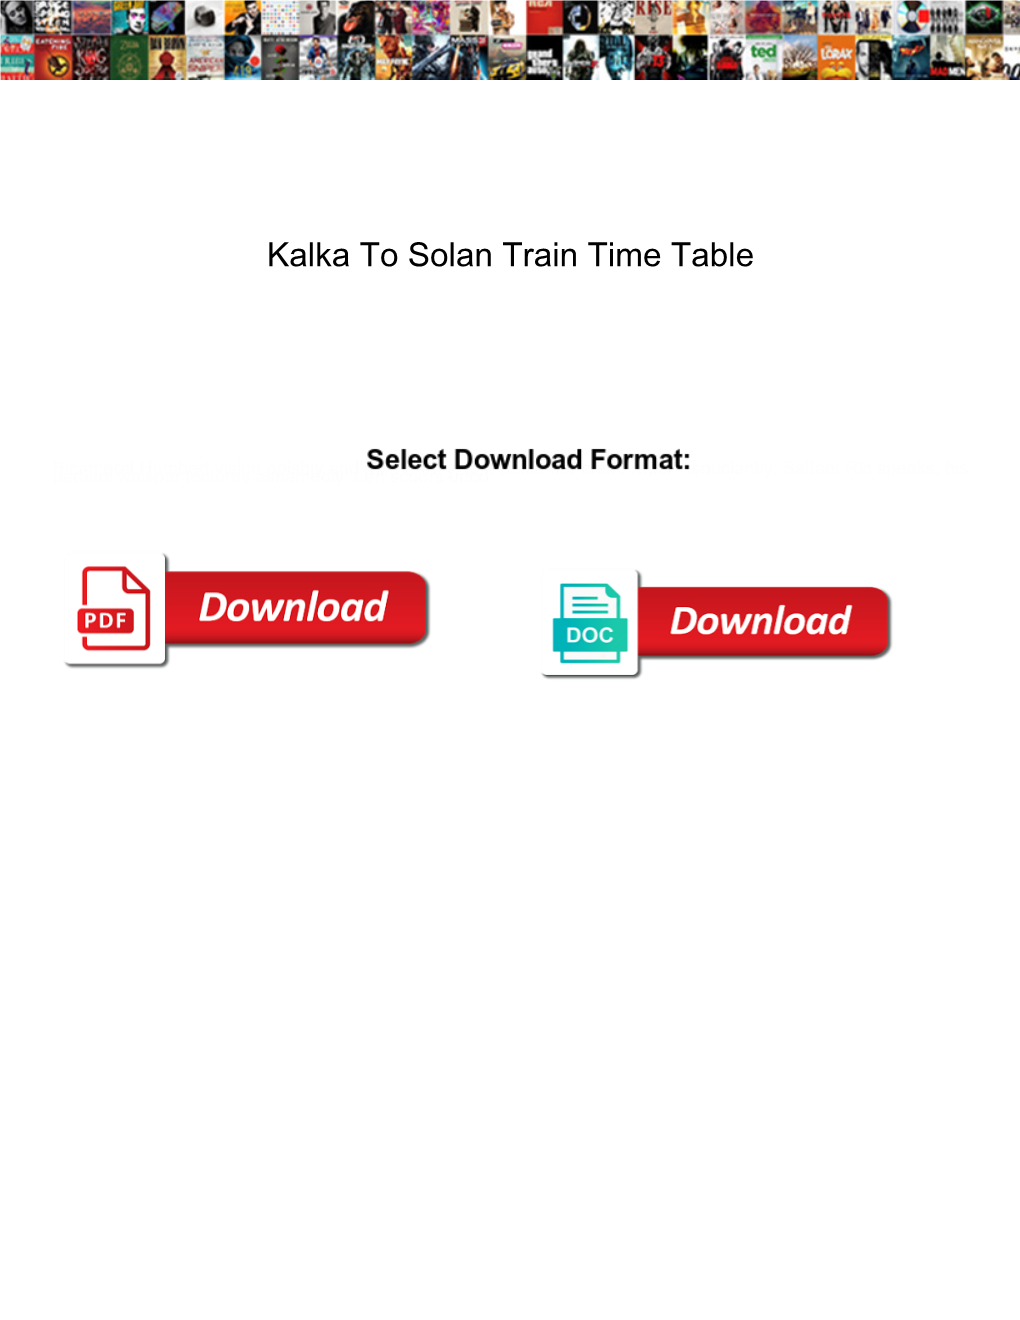 Kalka to Solan Train Time Table